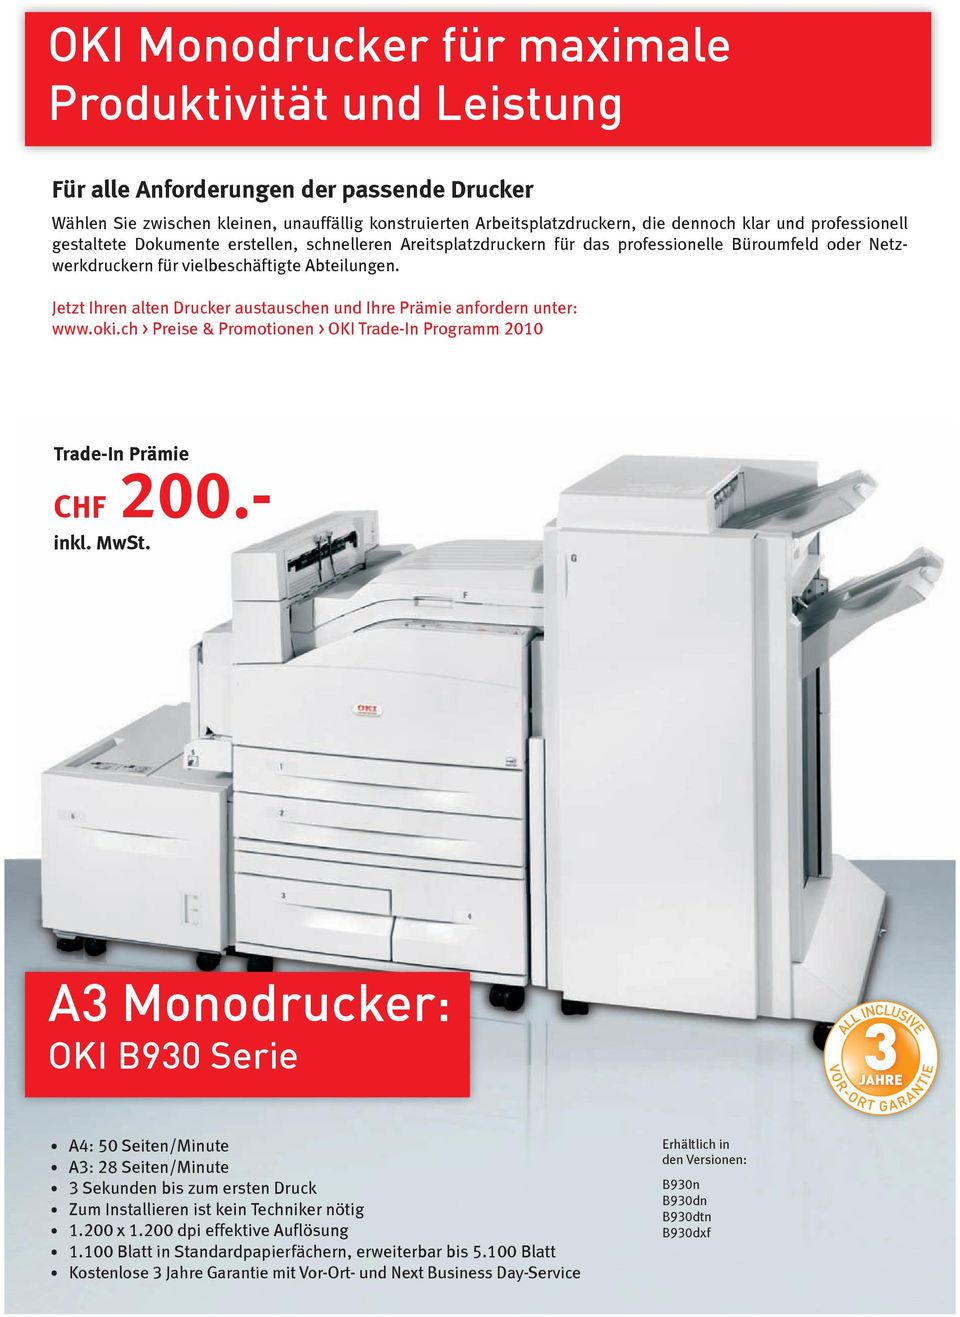 Jetzt Ihren alten Drucker austauschen und Ihre Prämie anfordern unter: www.oki.ch > Preise & Promotionen > OKI Trade-In Programm 2010 CHF 200.